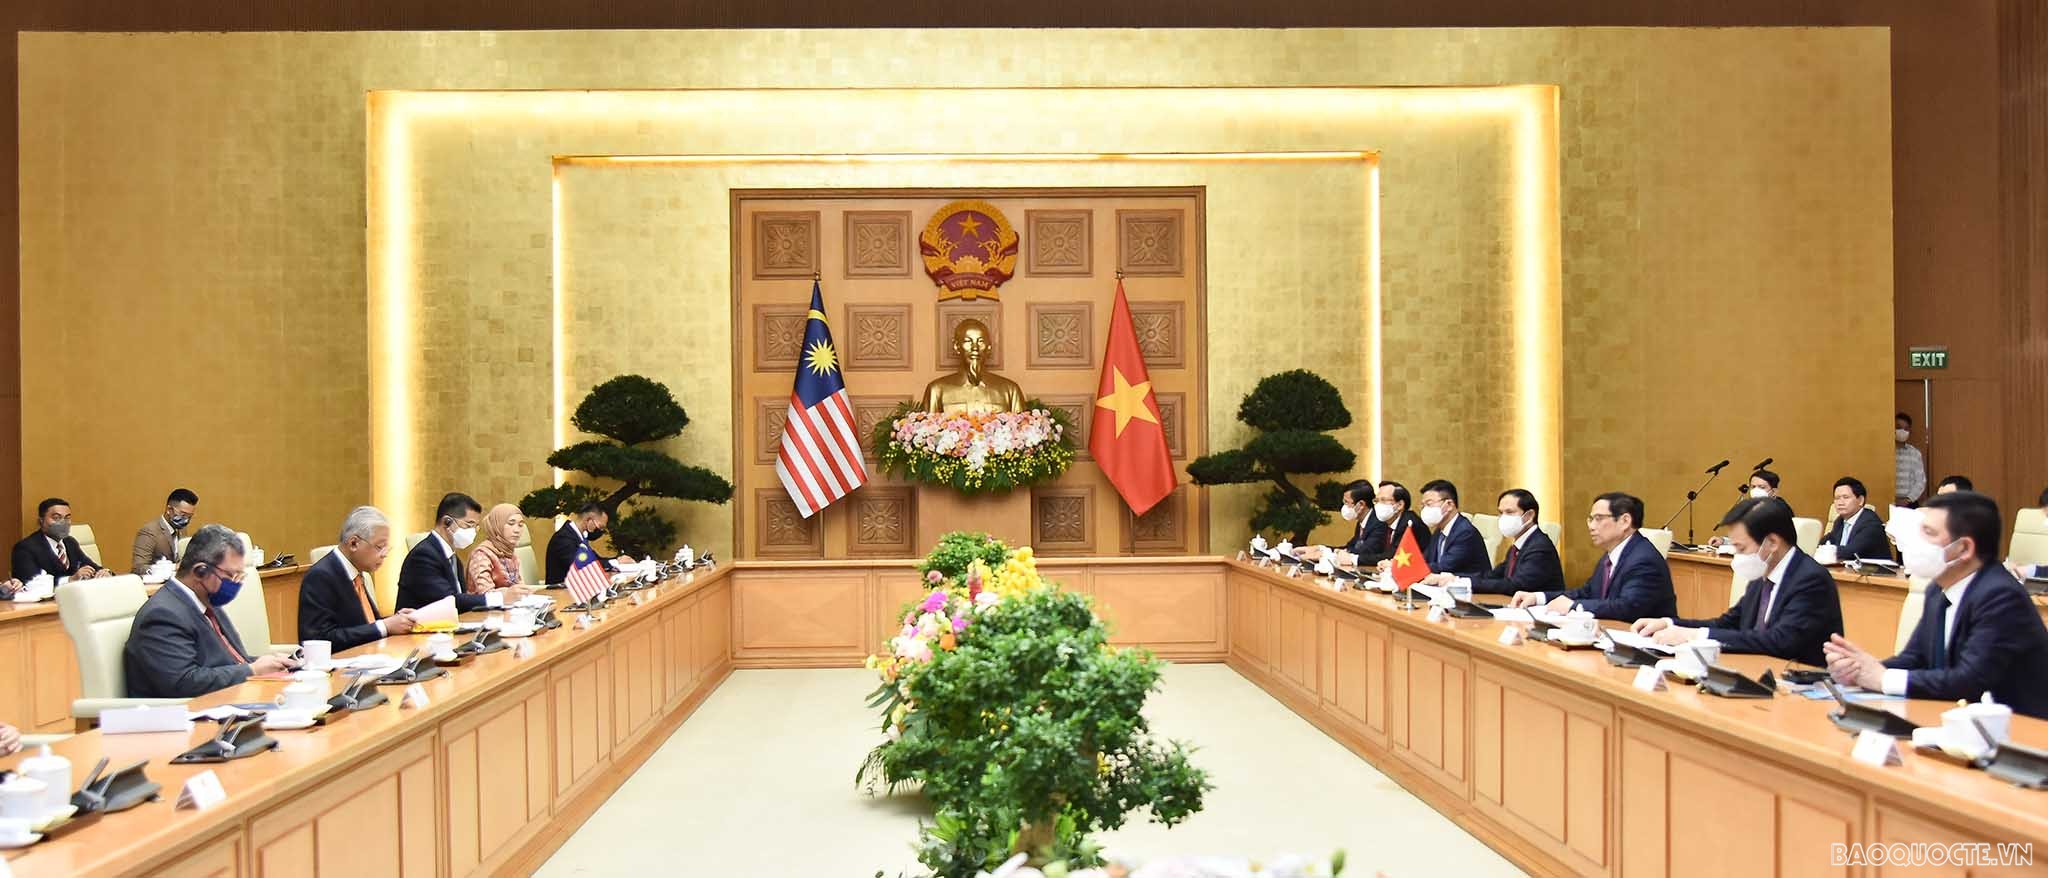 Sau lễ đón, hai Thủ tướng Phạm Minh Chính, Thủ tướng Malaysia Sabri bin Yaakob đã hội đàm trao đổi về các vấn đề quan tâm và chứng kiến ký kết văn kiện giữa hai nước.